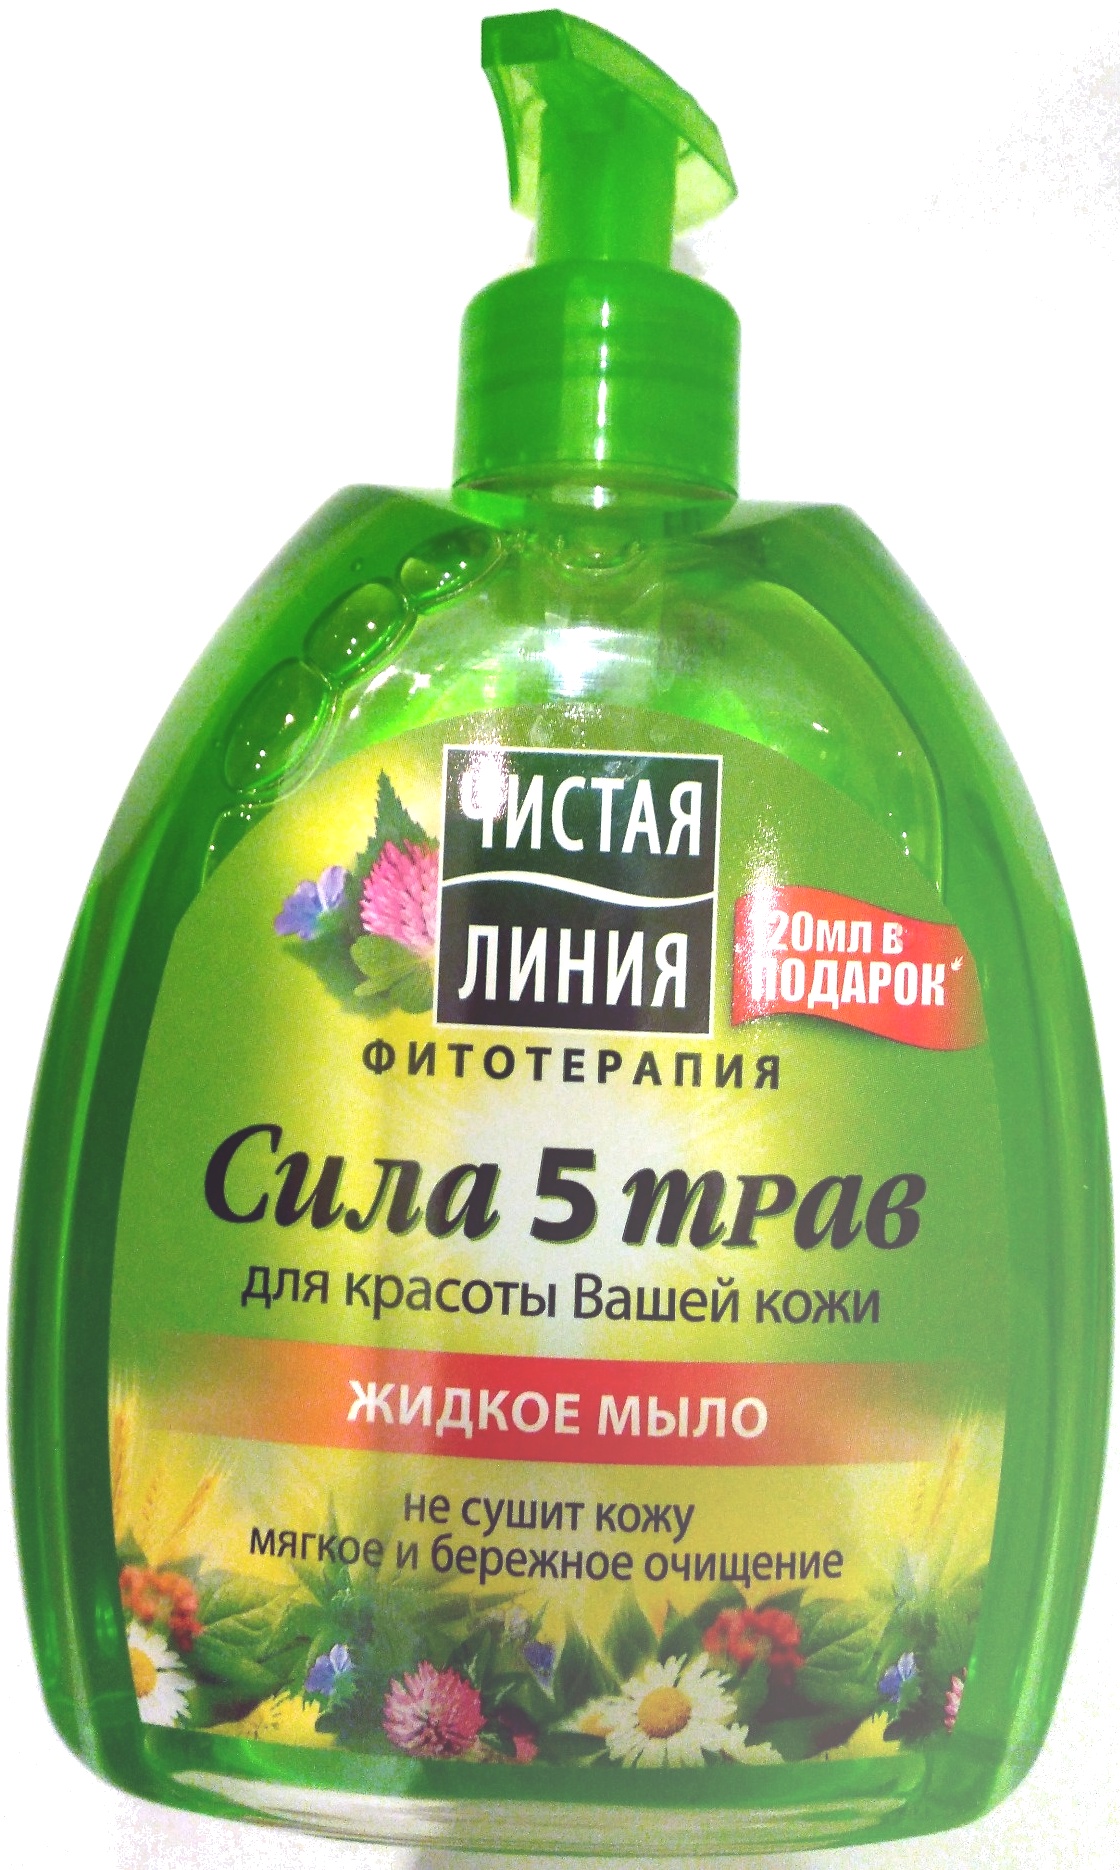 Жидкое мыло ЧИСТАЯ ЛИНИЯ Сила 5 трав - Product - ru